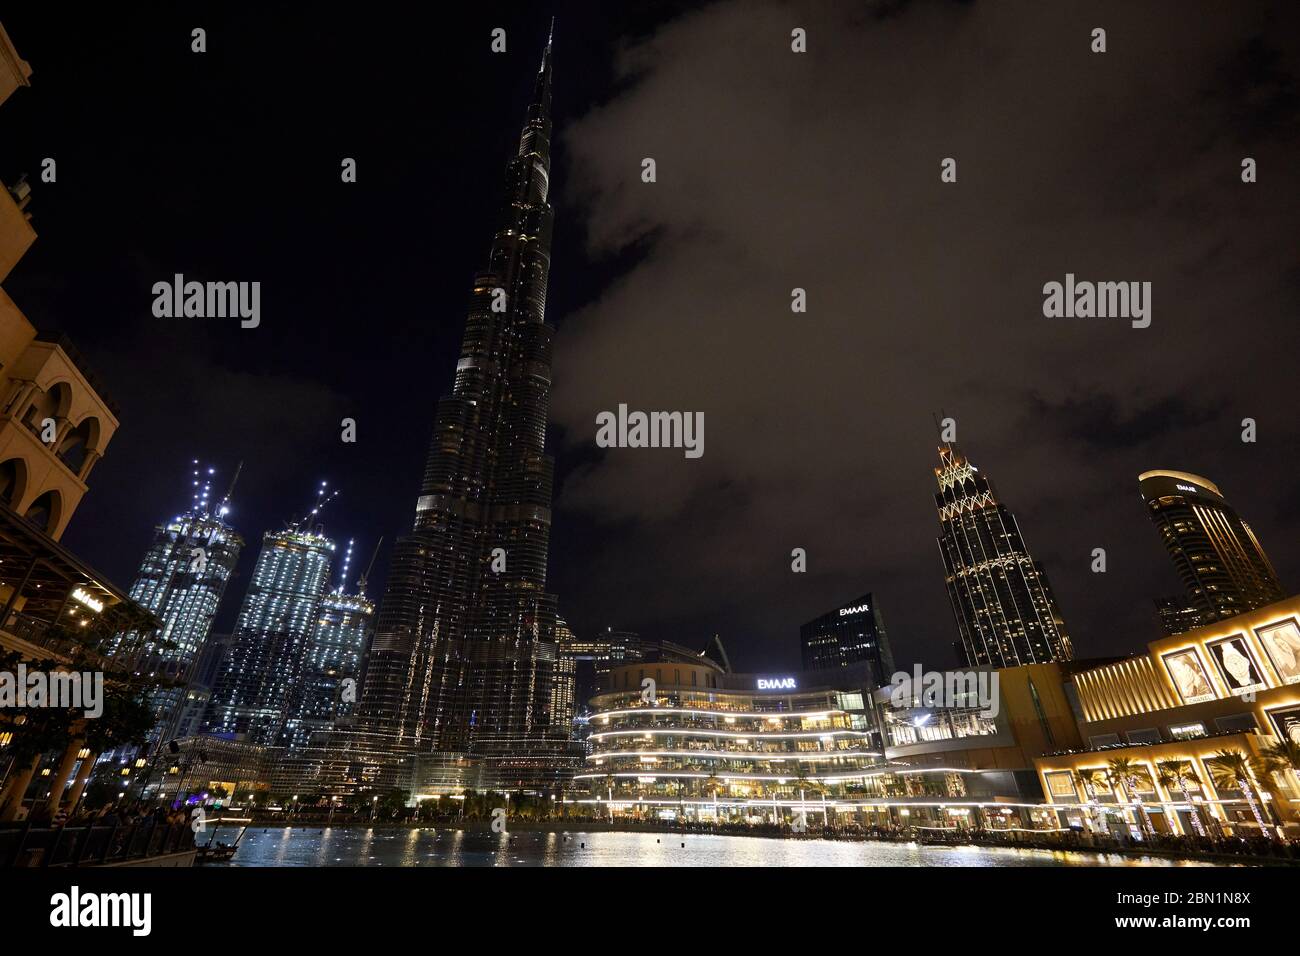 DUBAI, VEREINIGTE ARABISCHE EMIRATE - 21. NOVEMBER 2019: Burj Khalifa Wolkenkratzer und Dubai Mall mit Menschen bei Nacht beleuchtet Stockfoto